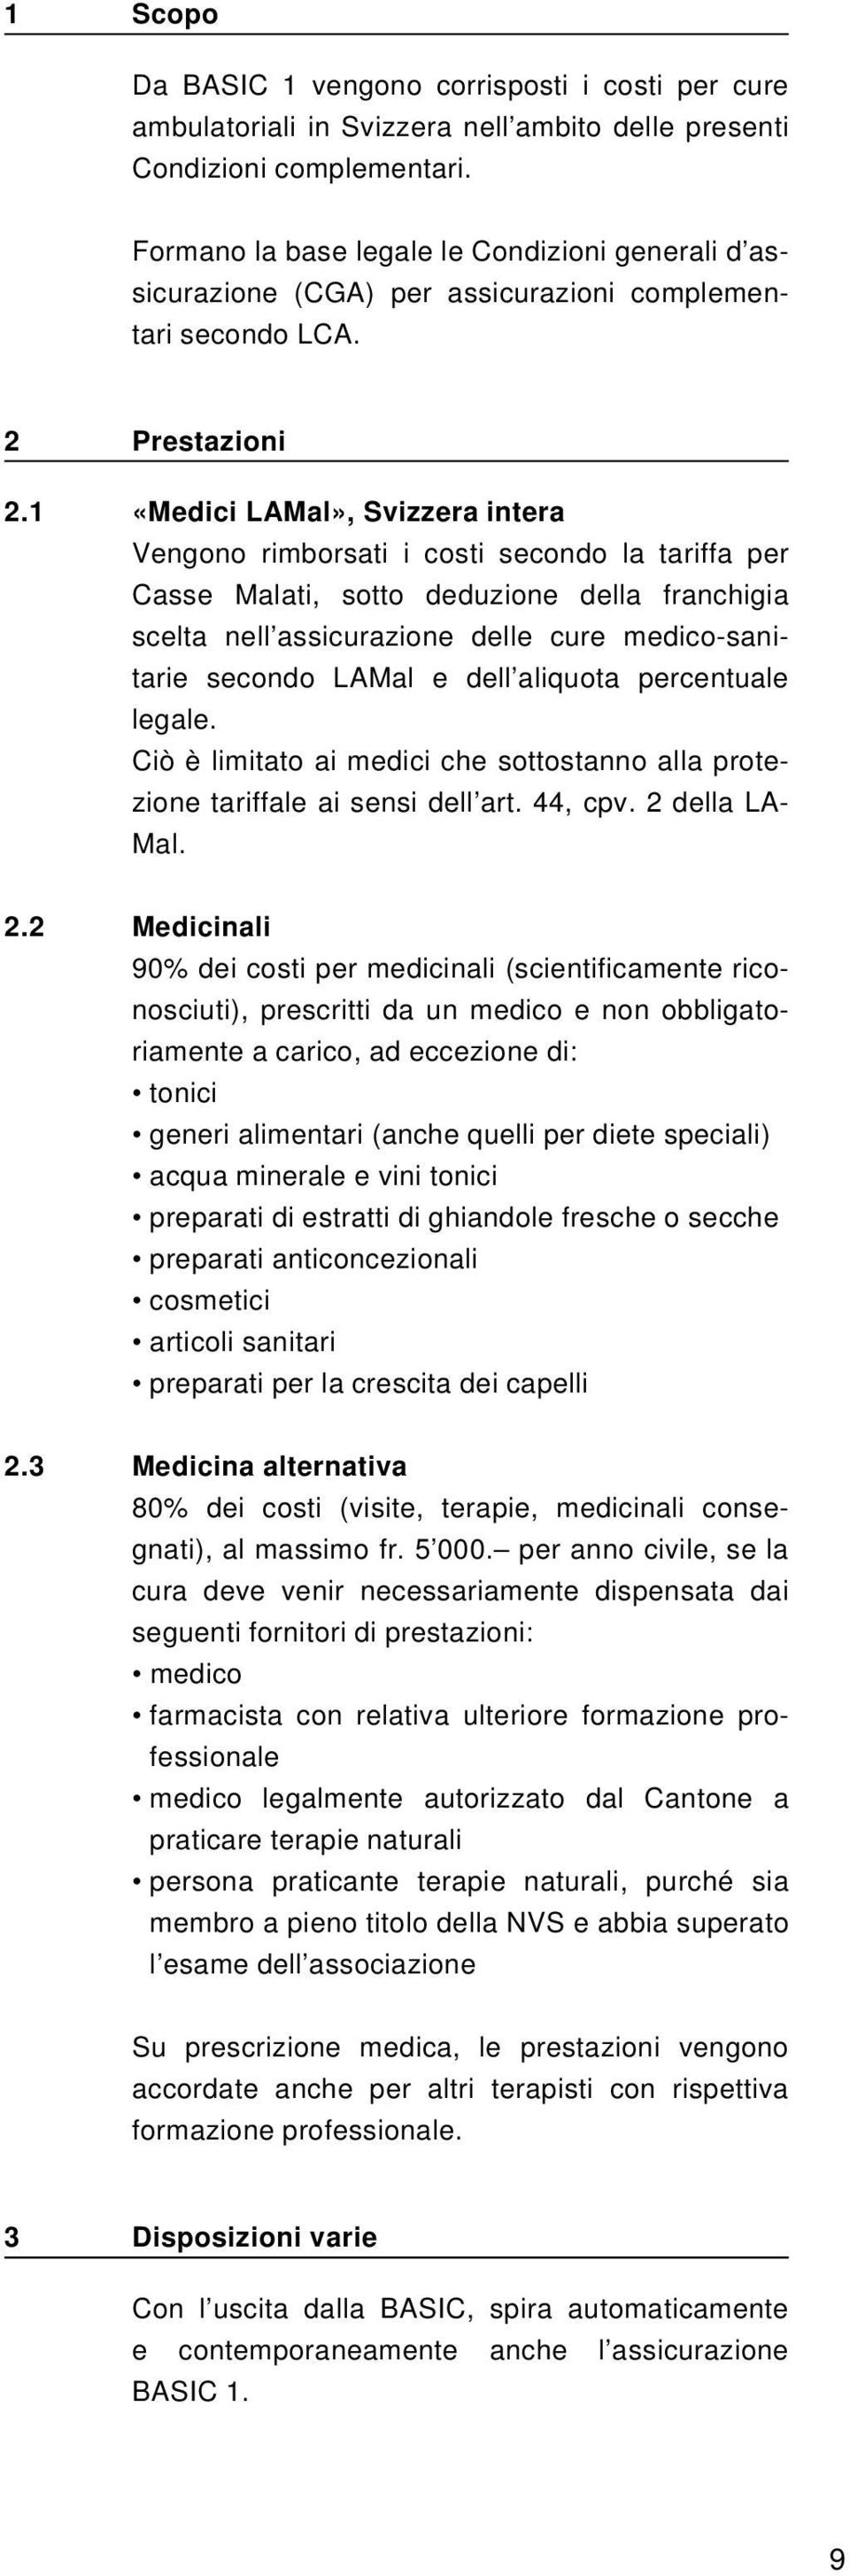 1 «Medici LAMal», Svizzera intera Vengono rimborsati i costi secondo la tariffa per Casse Malati, sotto deduzione della franchigia scelta nell assicurazione delle cure medico-sanitarie secondo LAMal